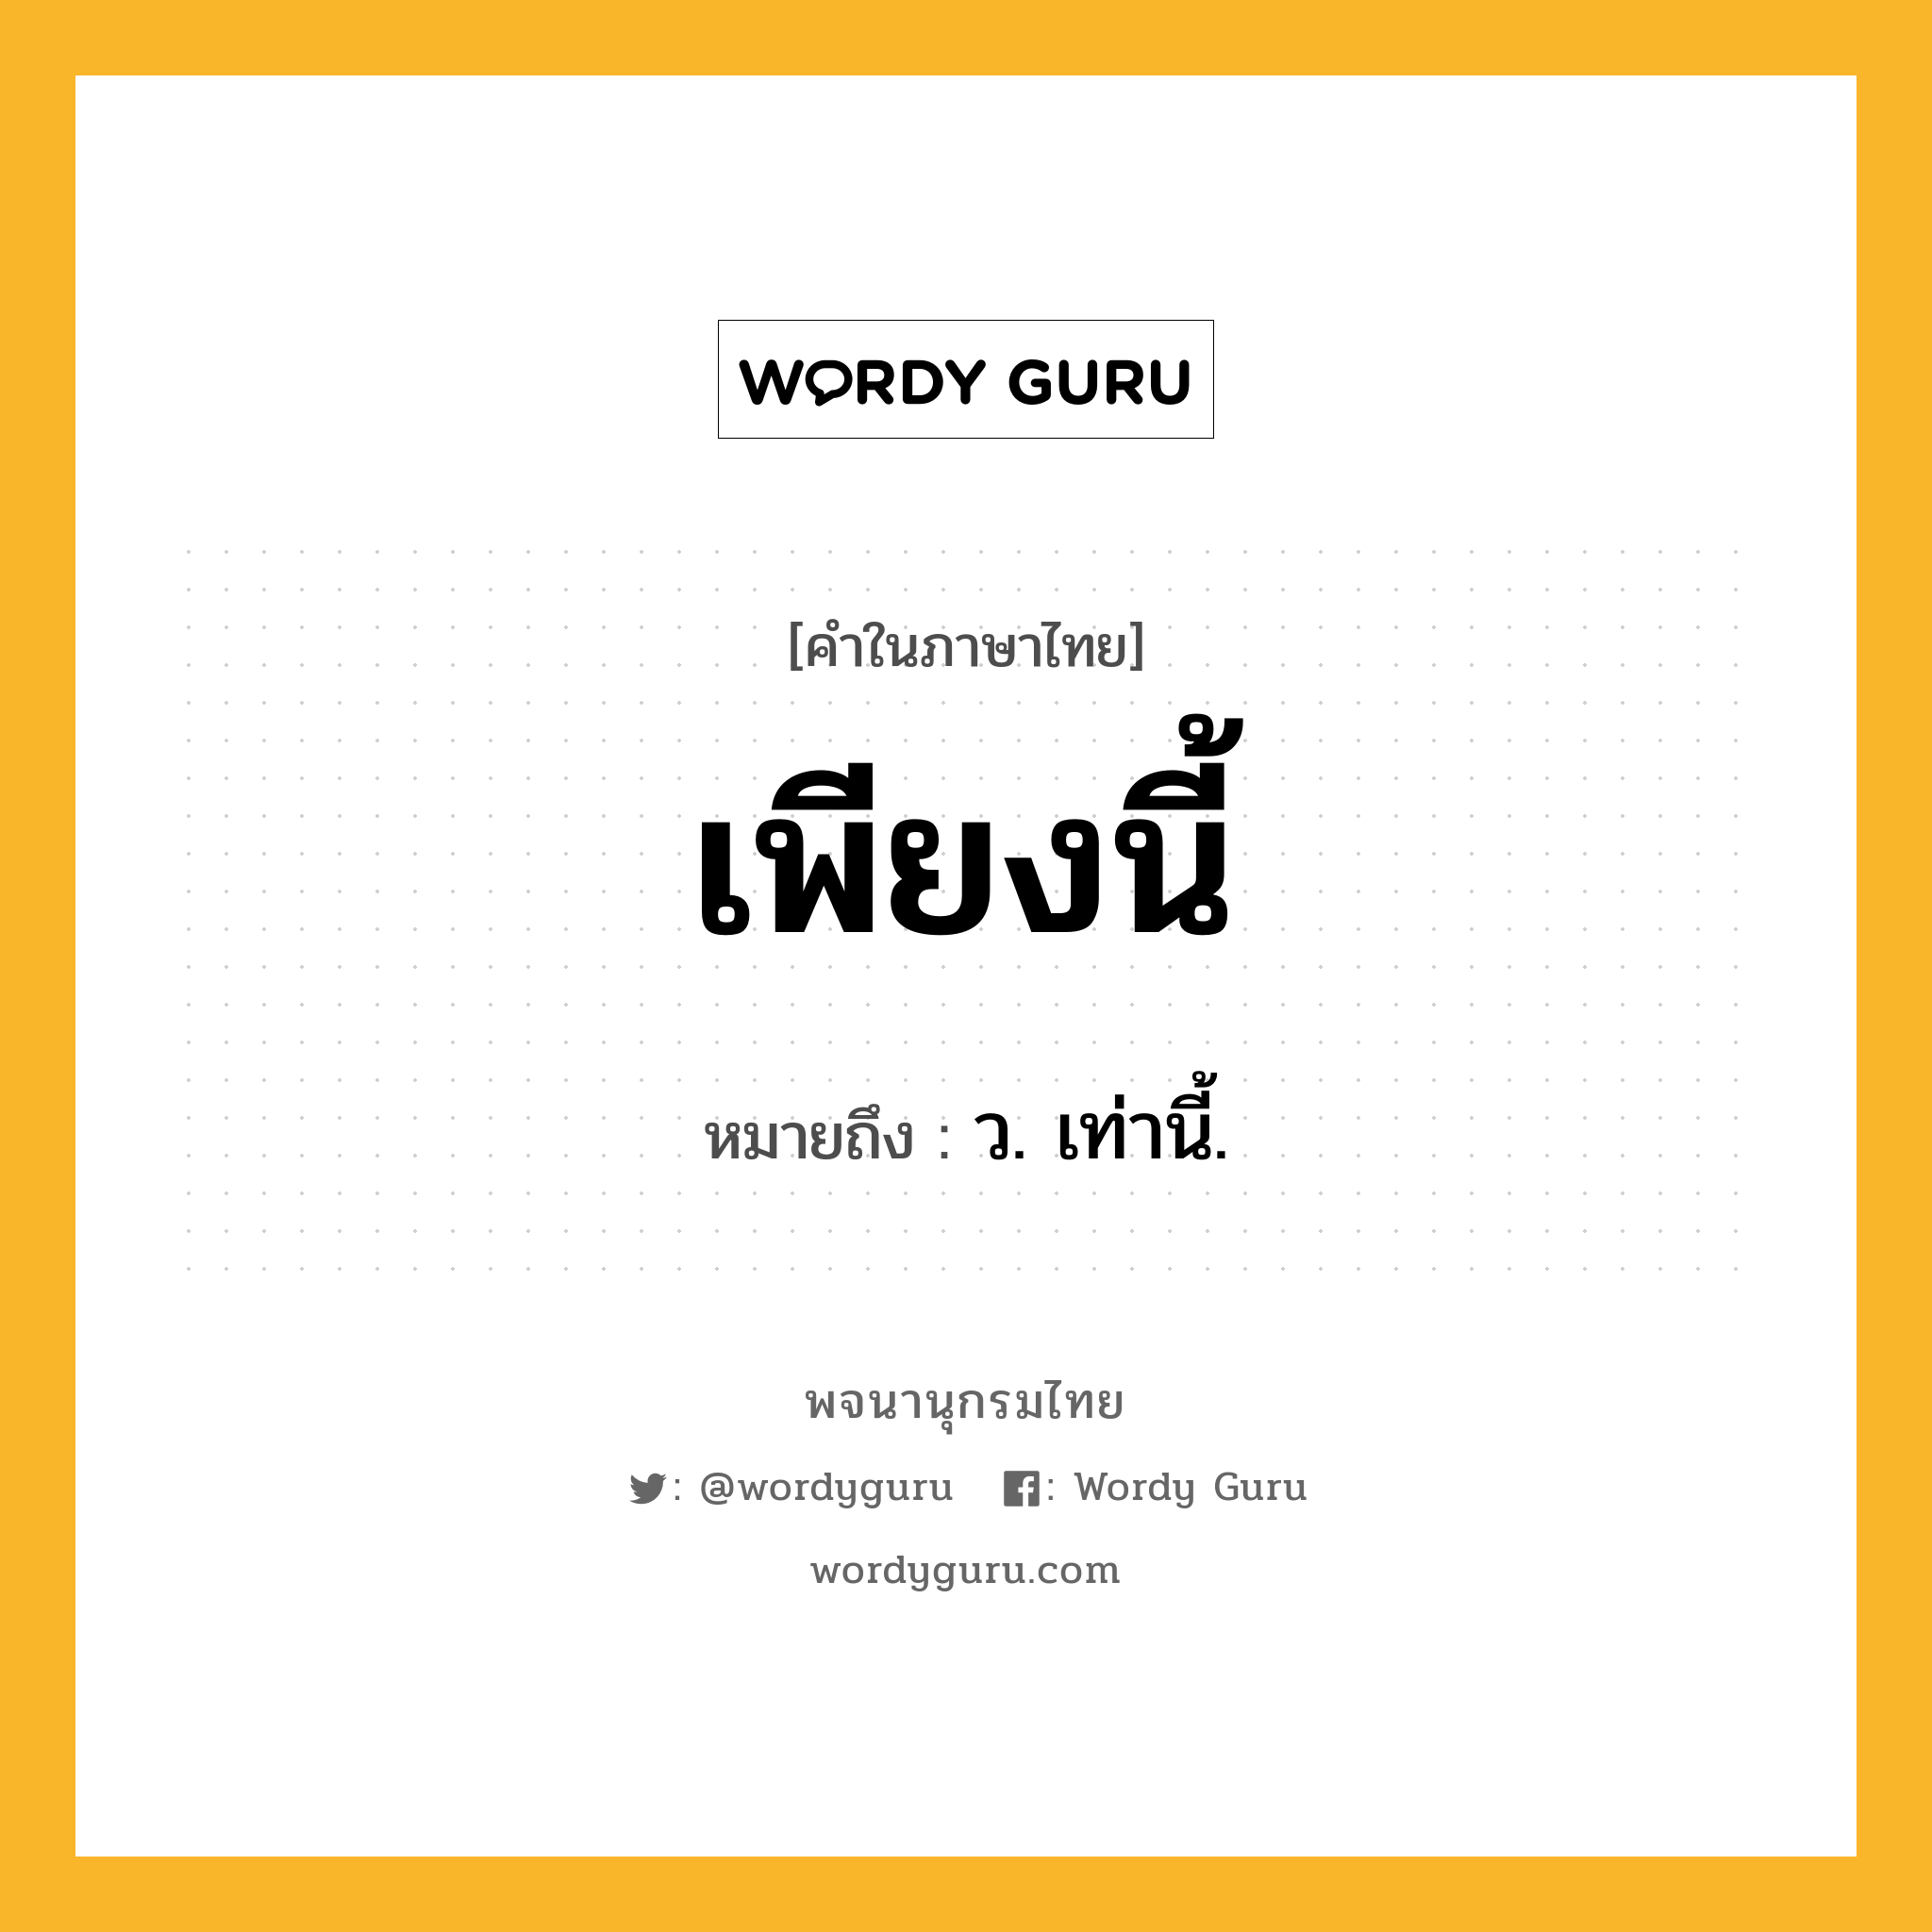 เพียงนี้ หมายถึงอะไร?, คำในภาษาไทย เพียงนี้ หมายถึง ว. เท่านี้.